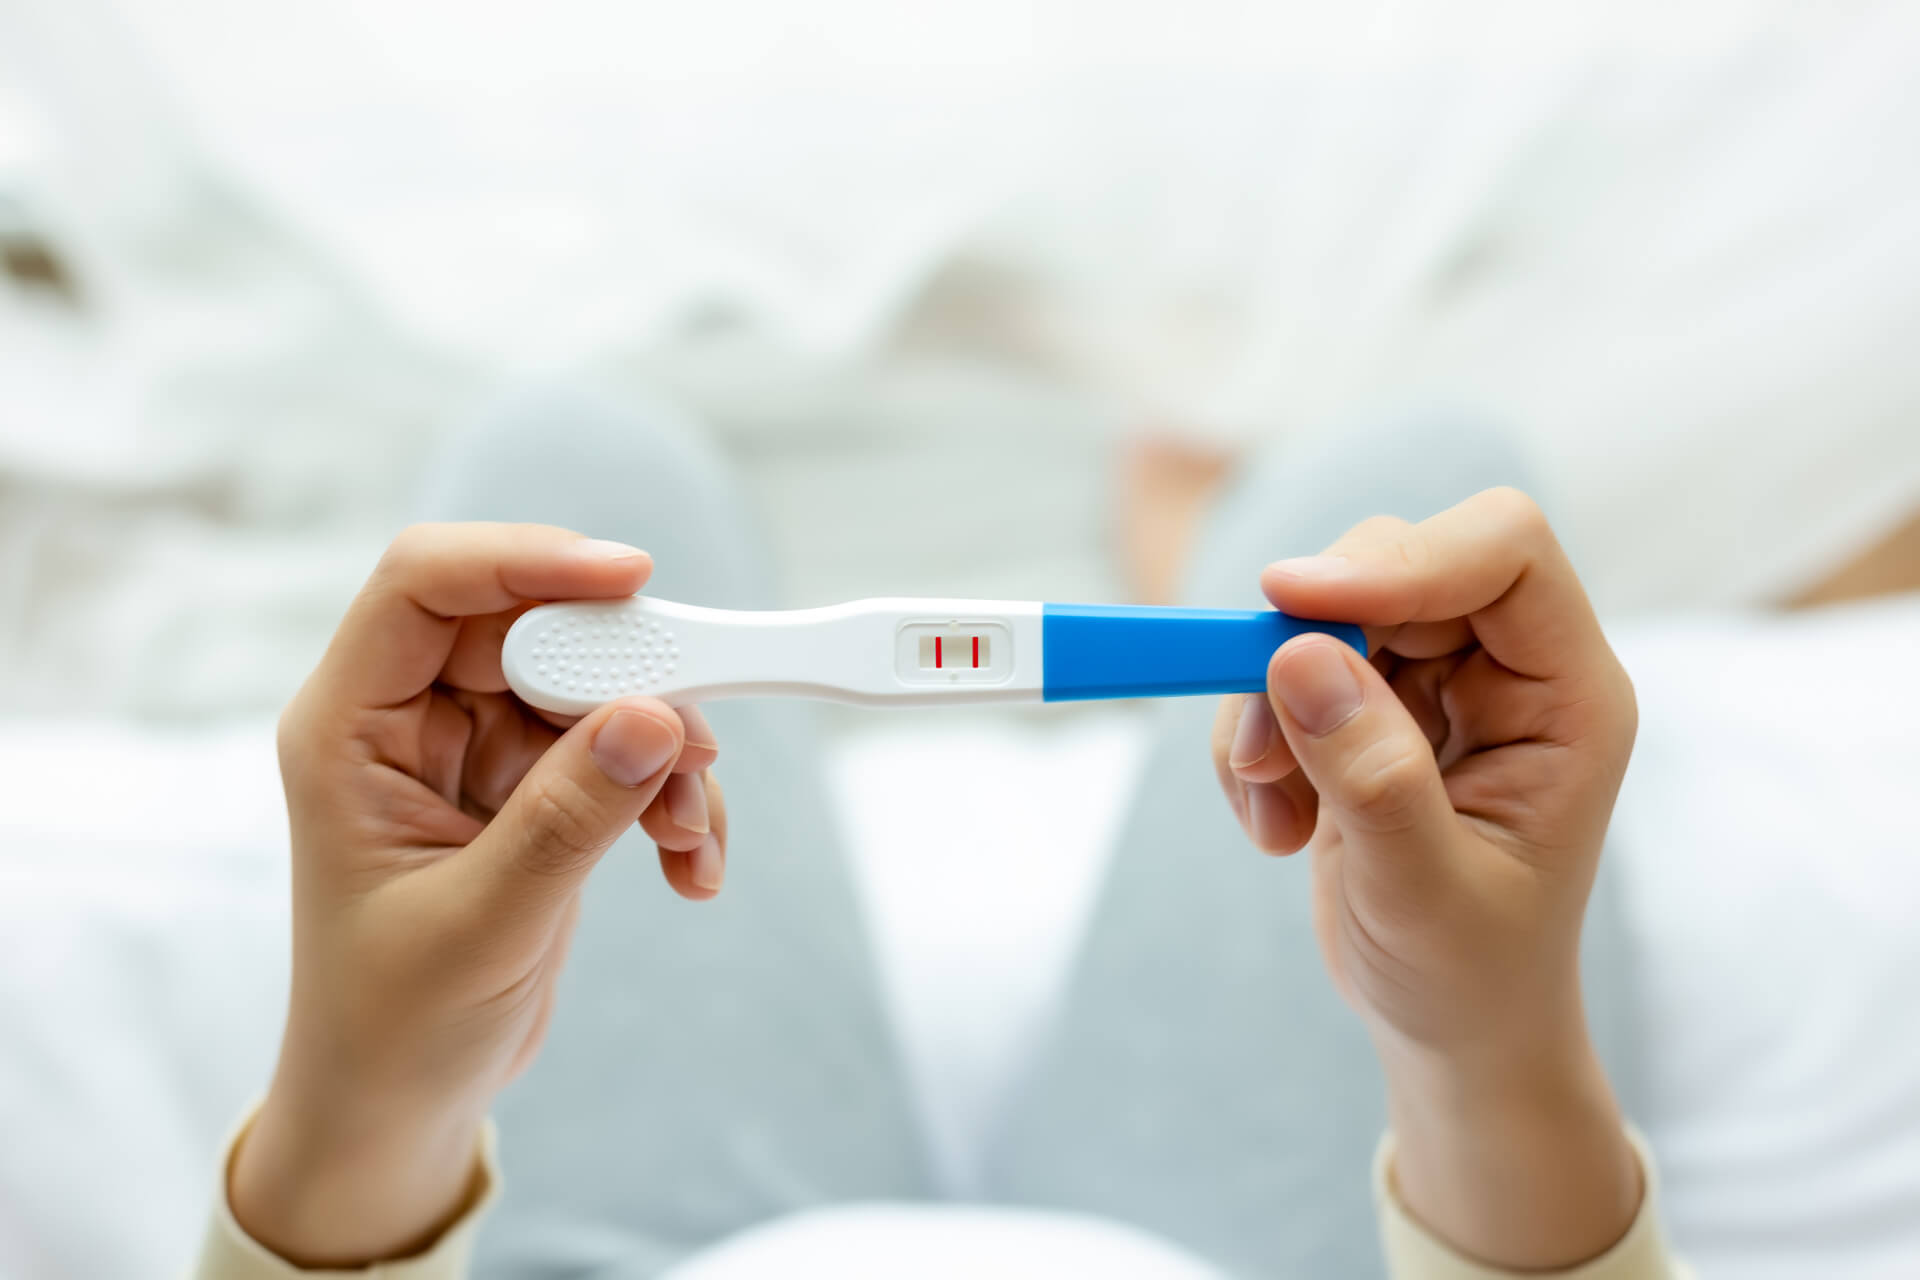 Teste de gravidez de farmácia: devo confiar no resultado